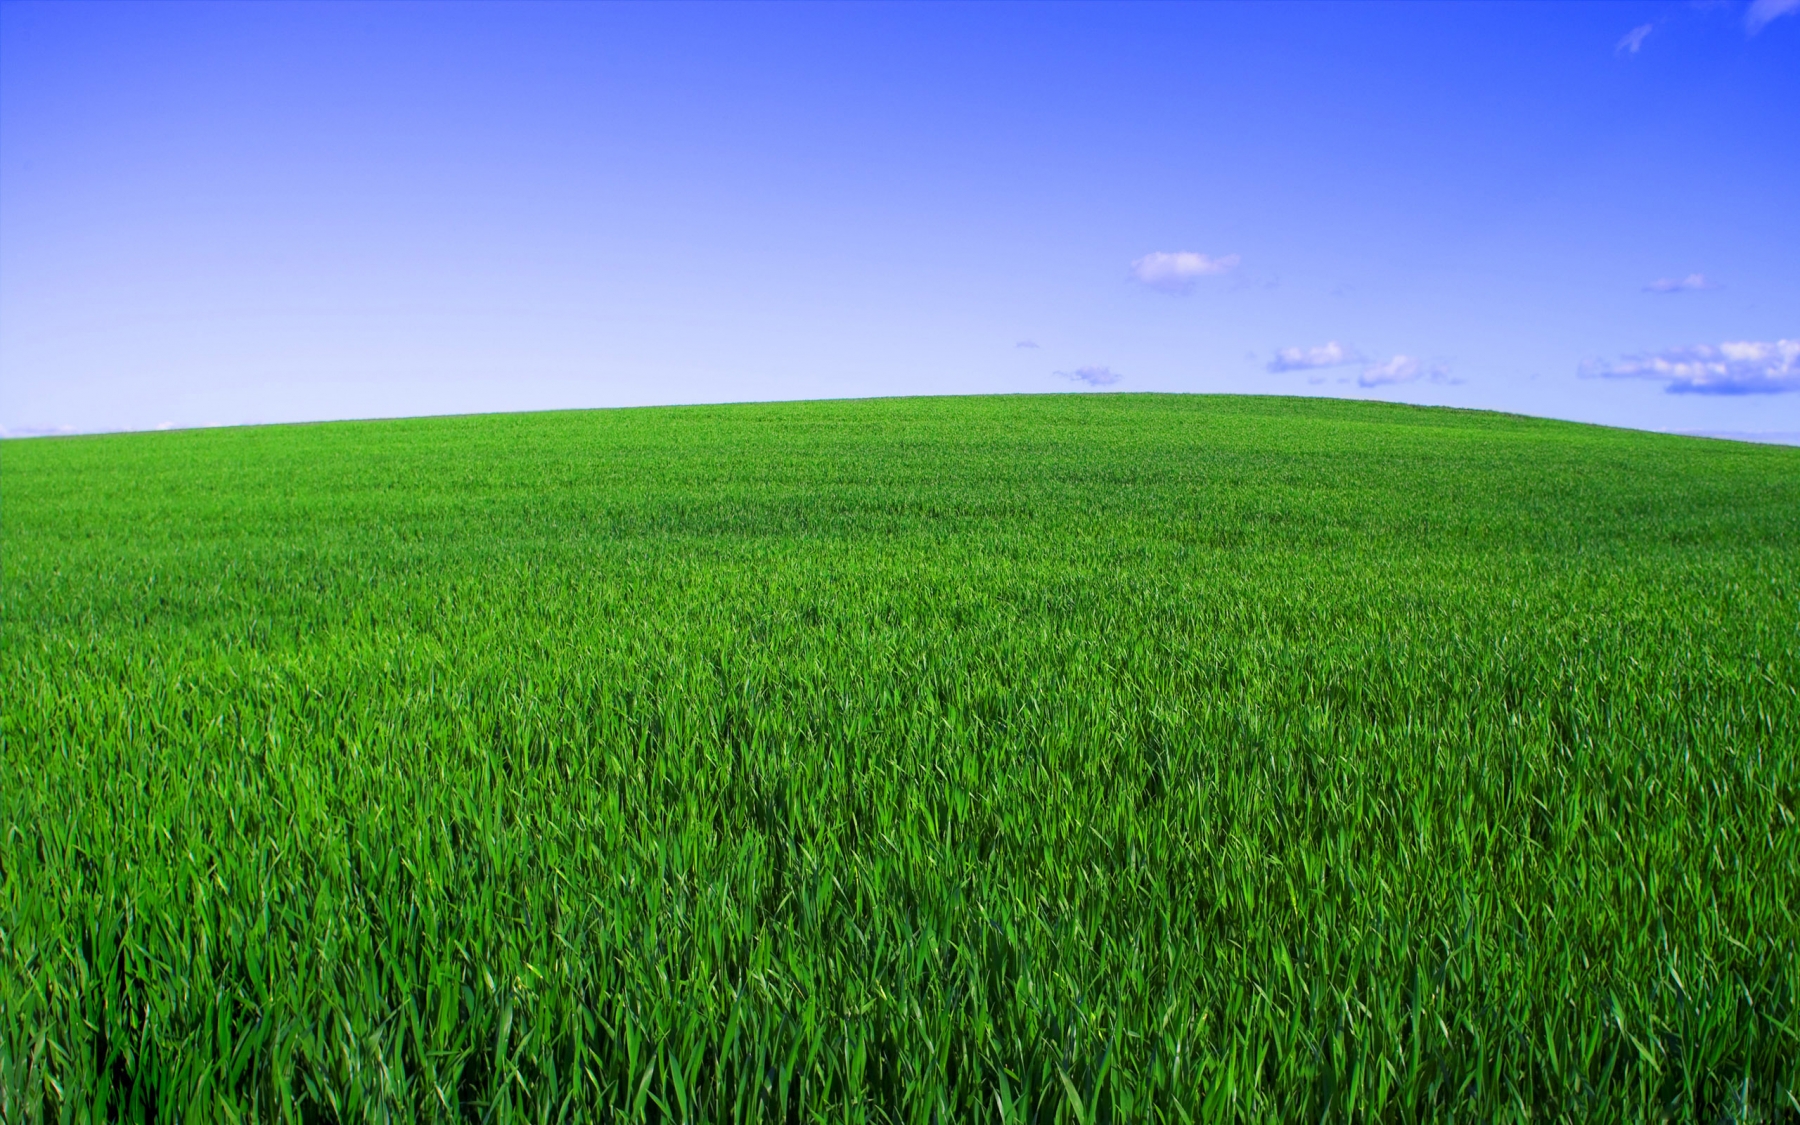 Corn Fields In Denmark - Fields Of Green Grass - HD Wallpaper 